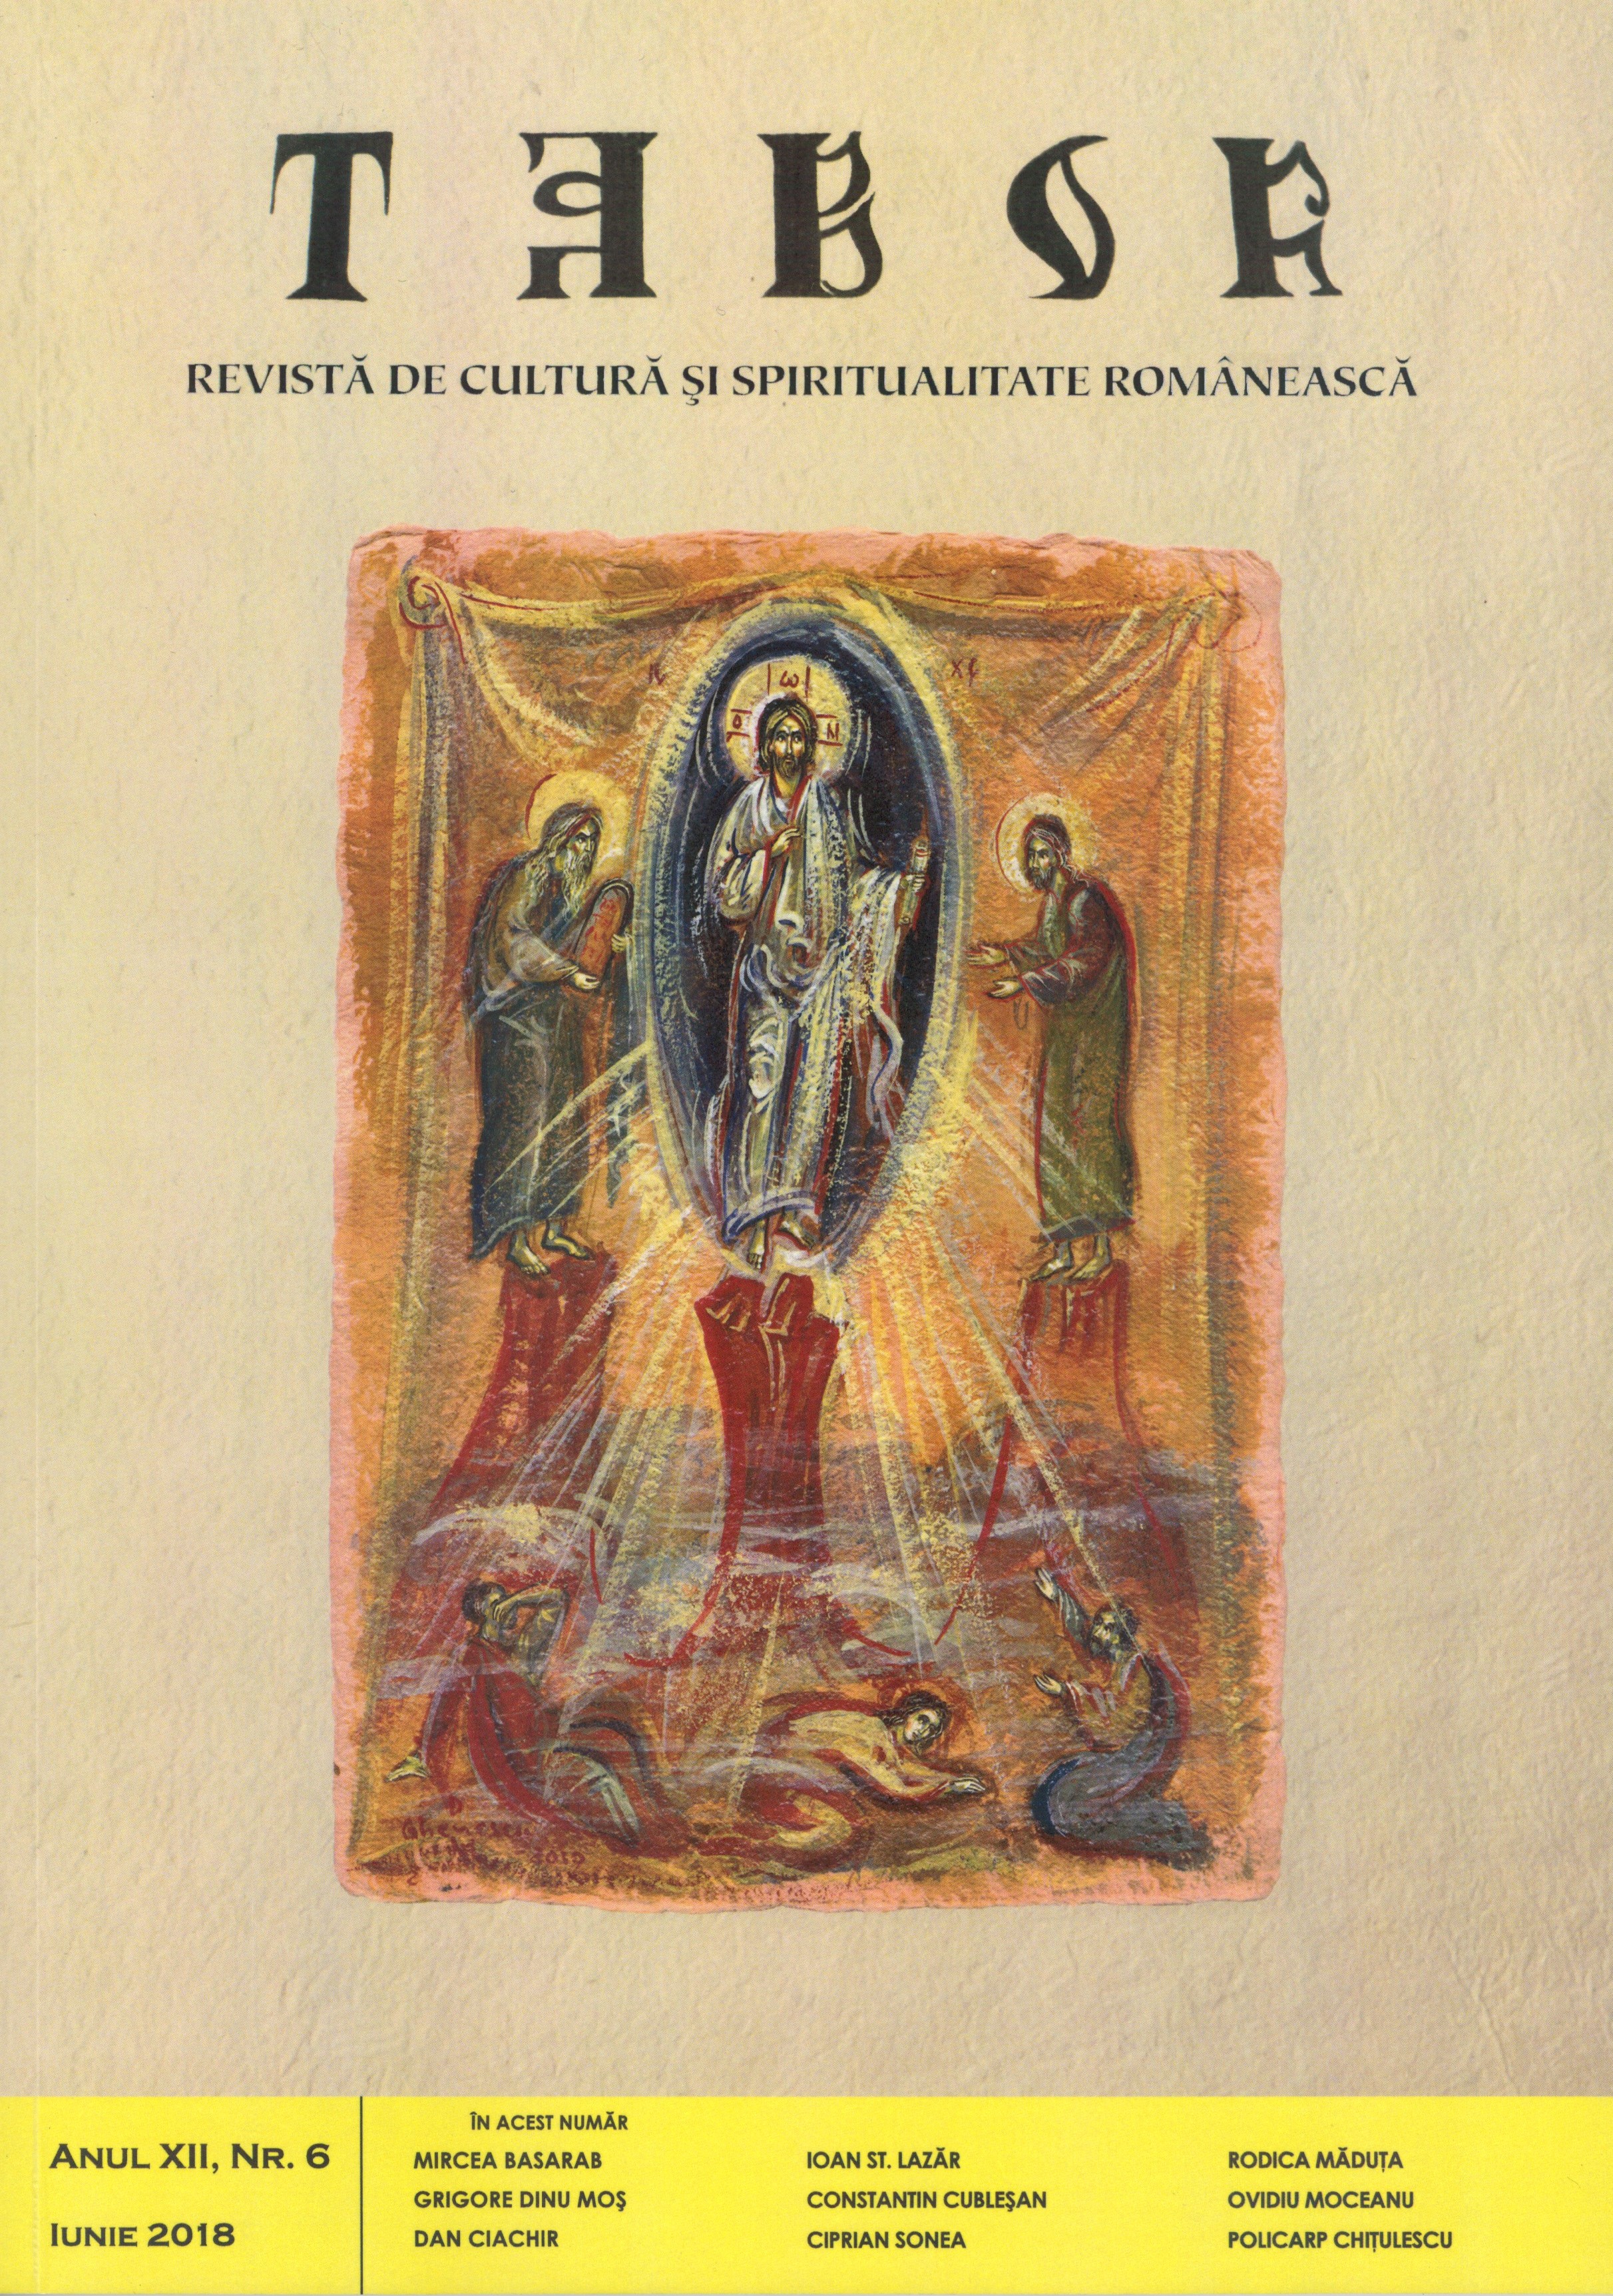 Univers şi spirit transilvan la Ioan Alexandru (II)